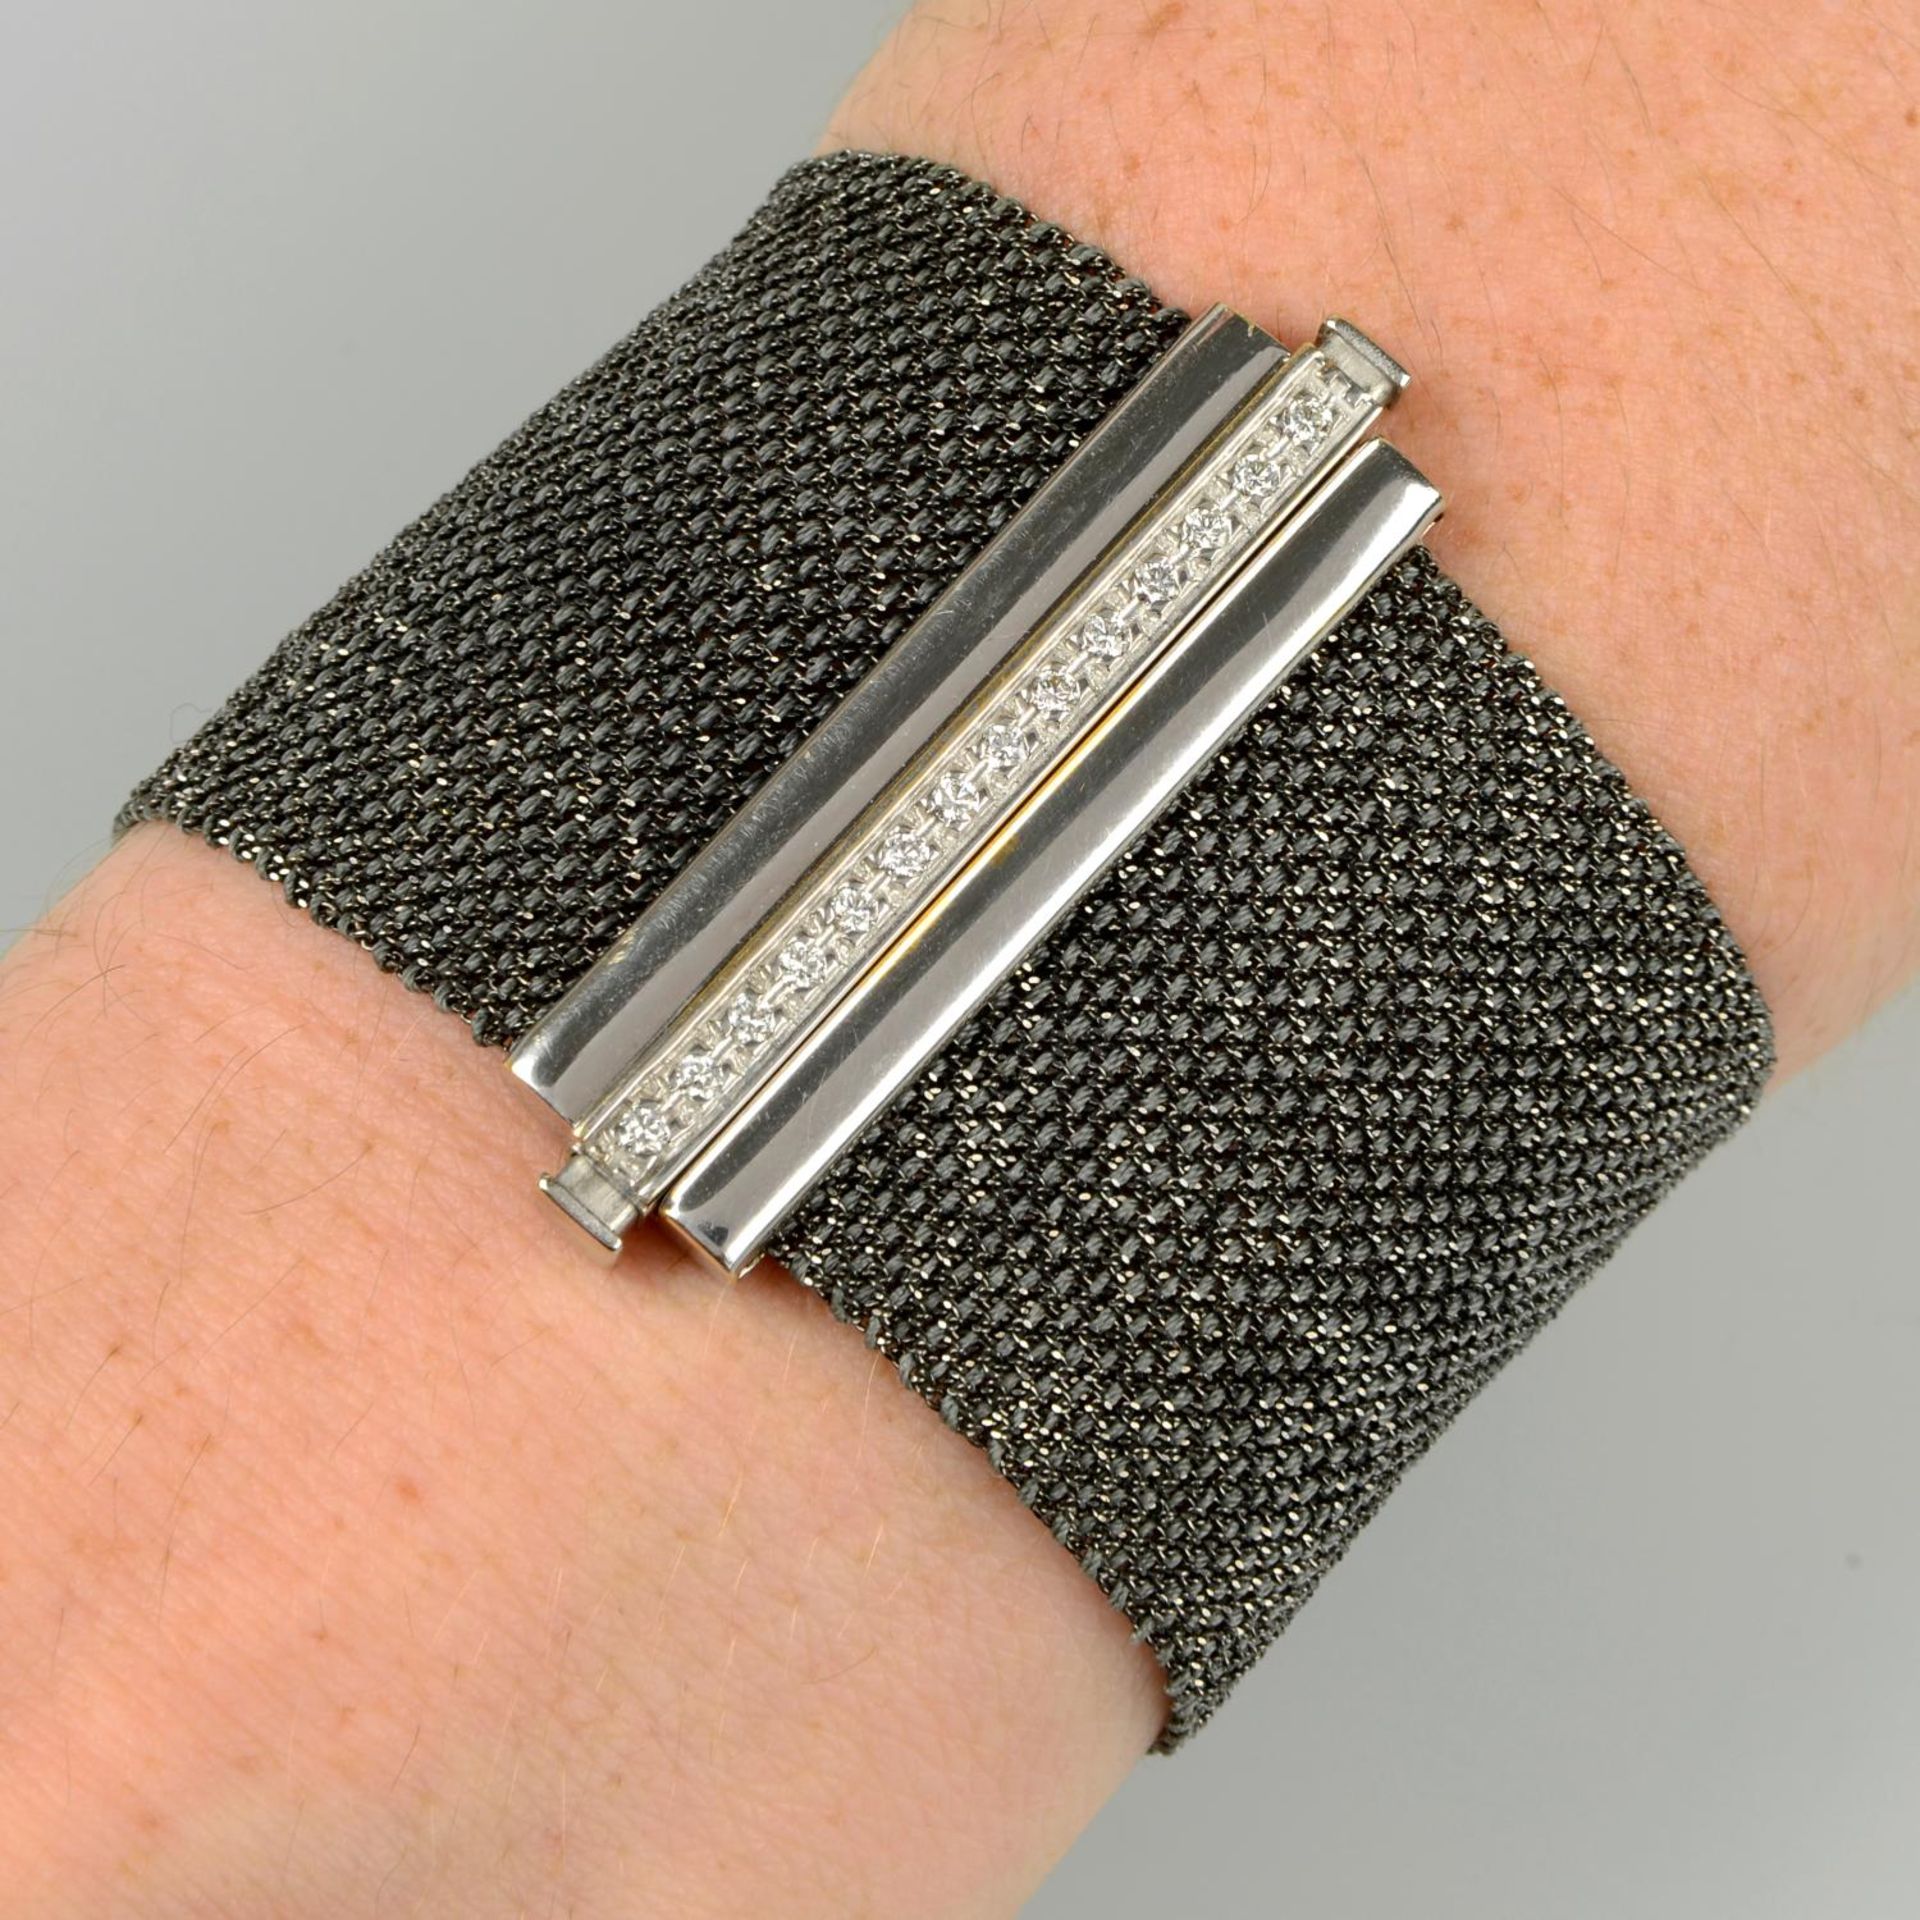 A woven bracelet, with pavé-set diamond clasp, by Carolina Bucci.